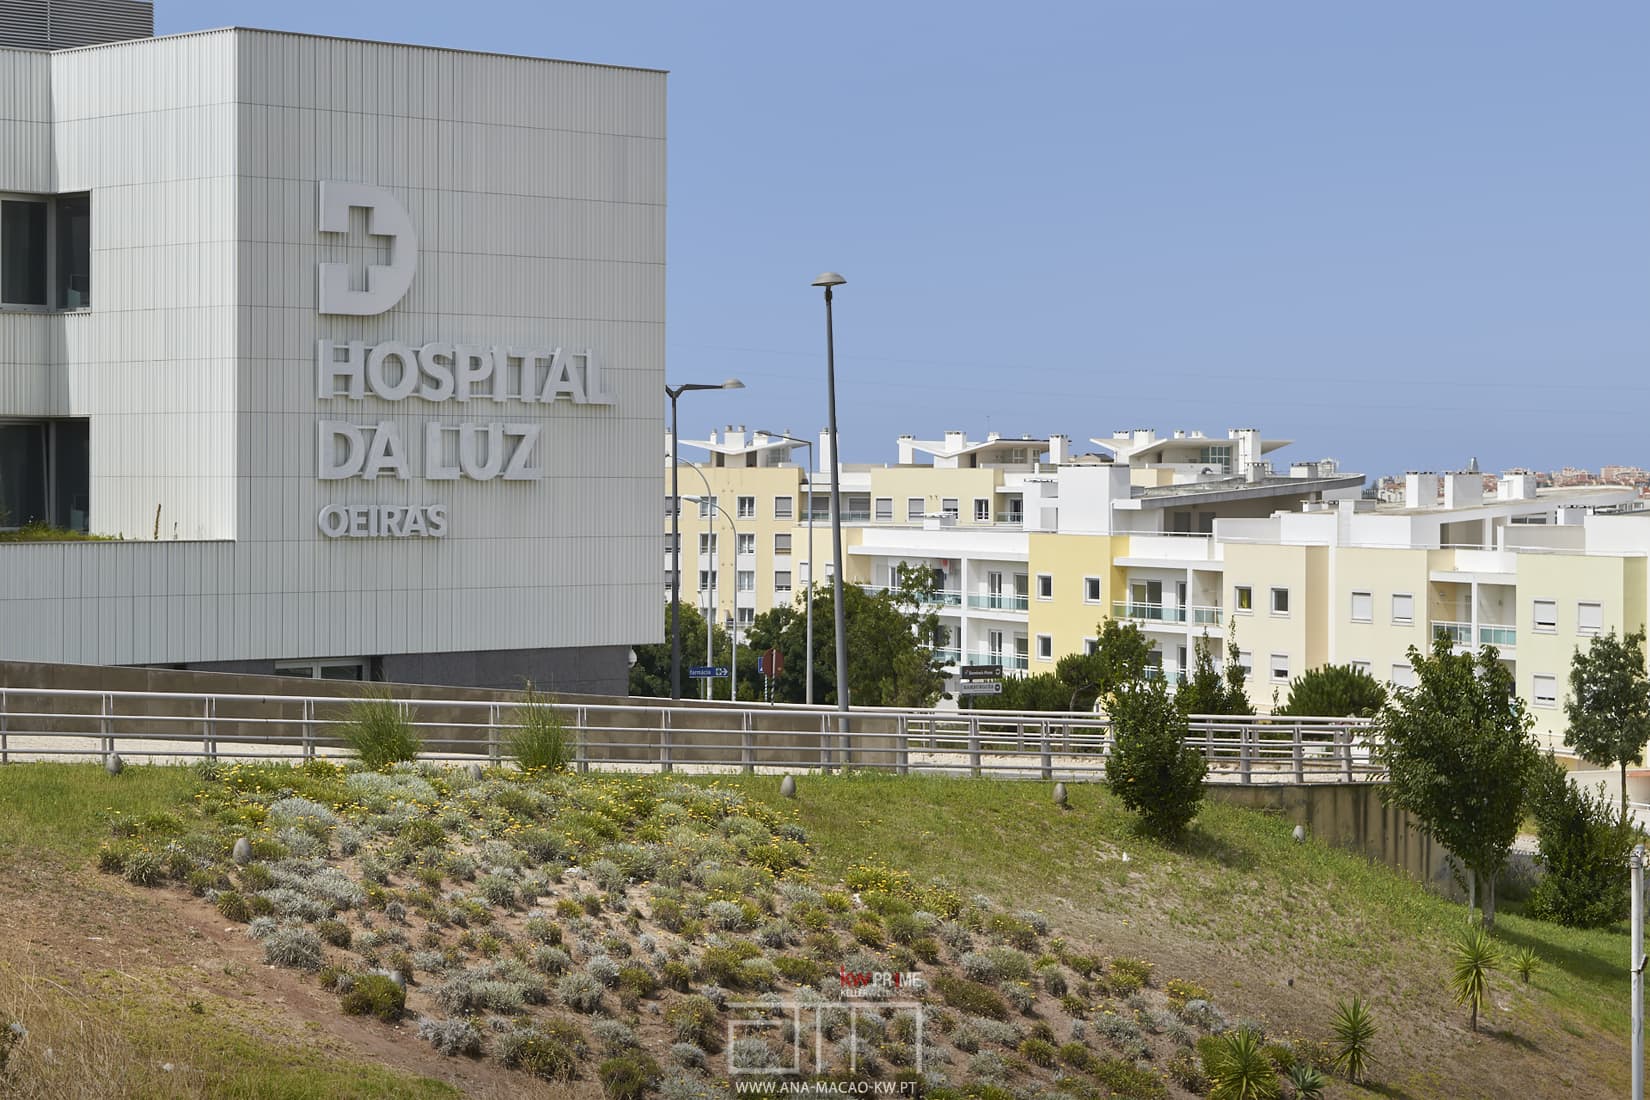 Hospital da Luz next to the Oeiras Forum